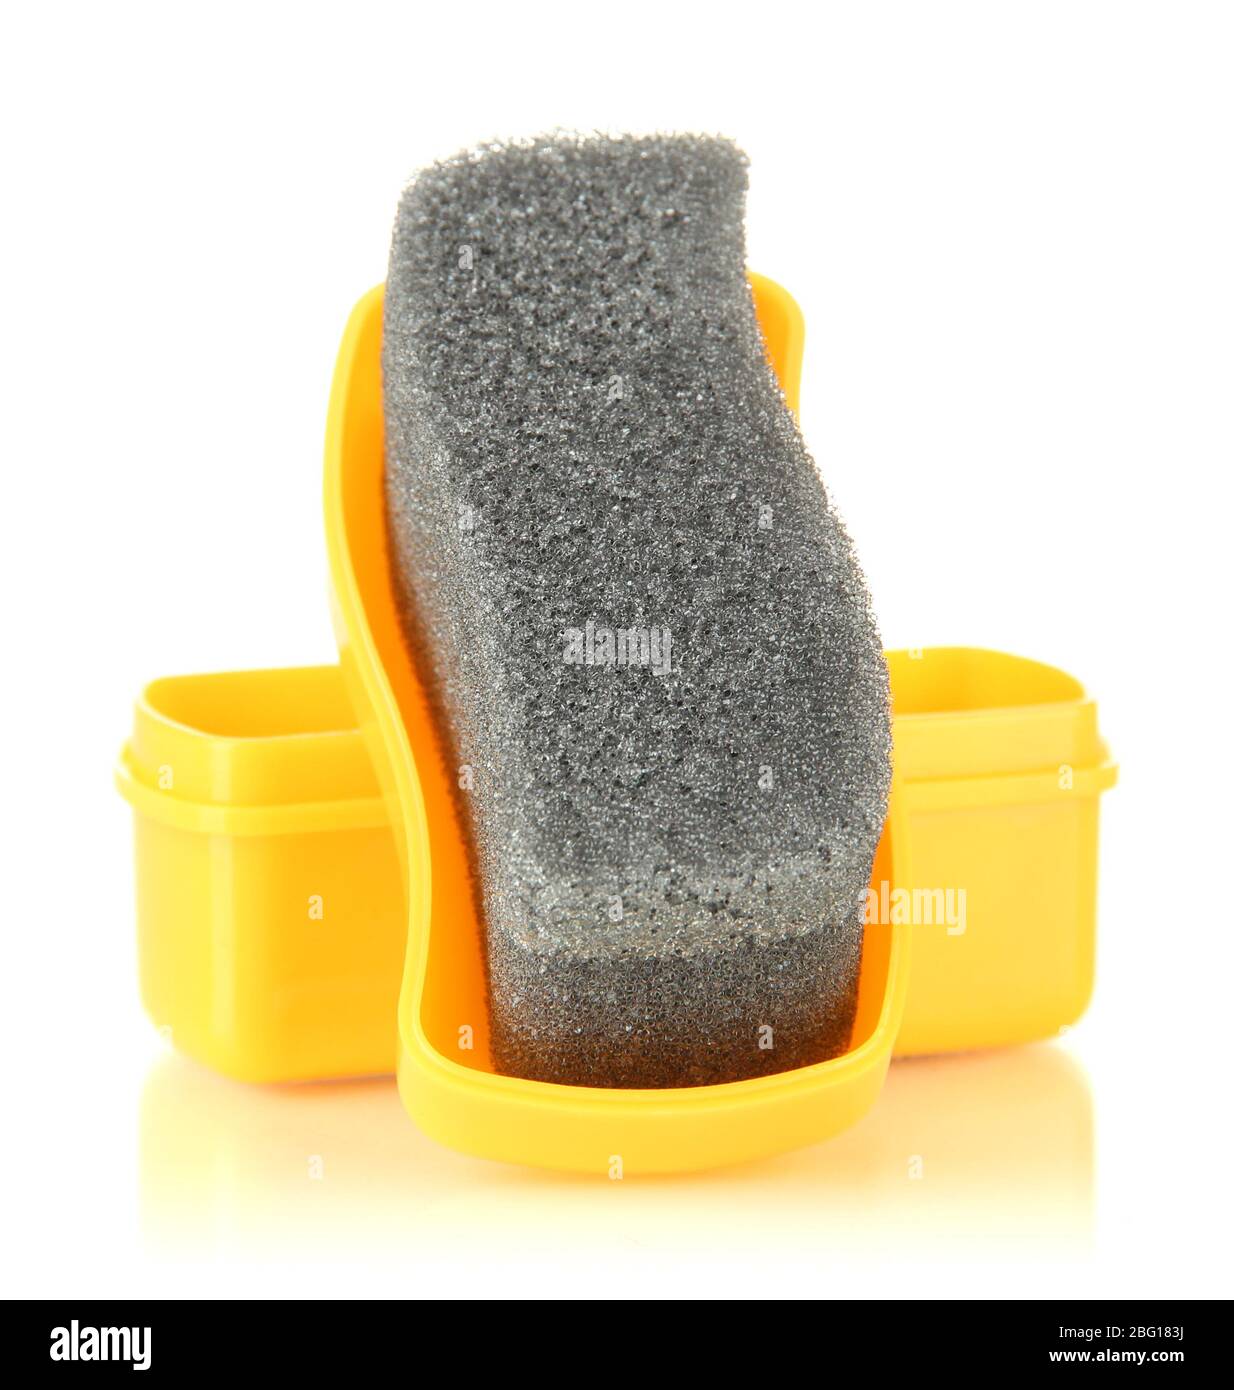 Shoe shine sponge, isolated on white Stock Photo - Alamy